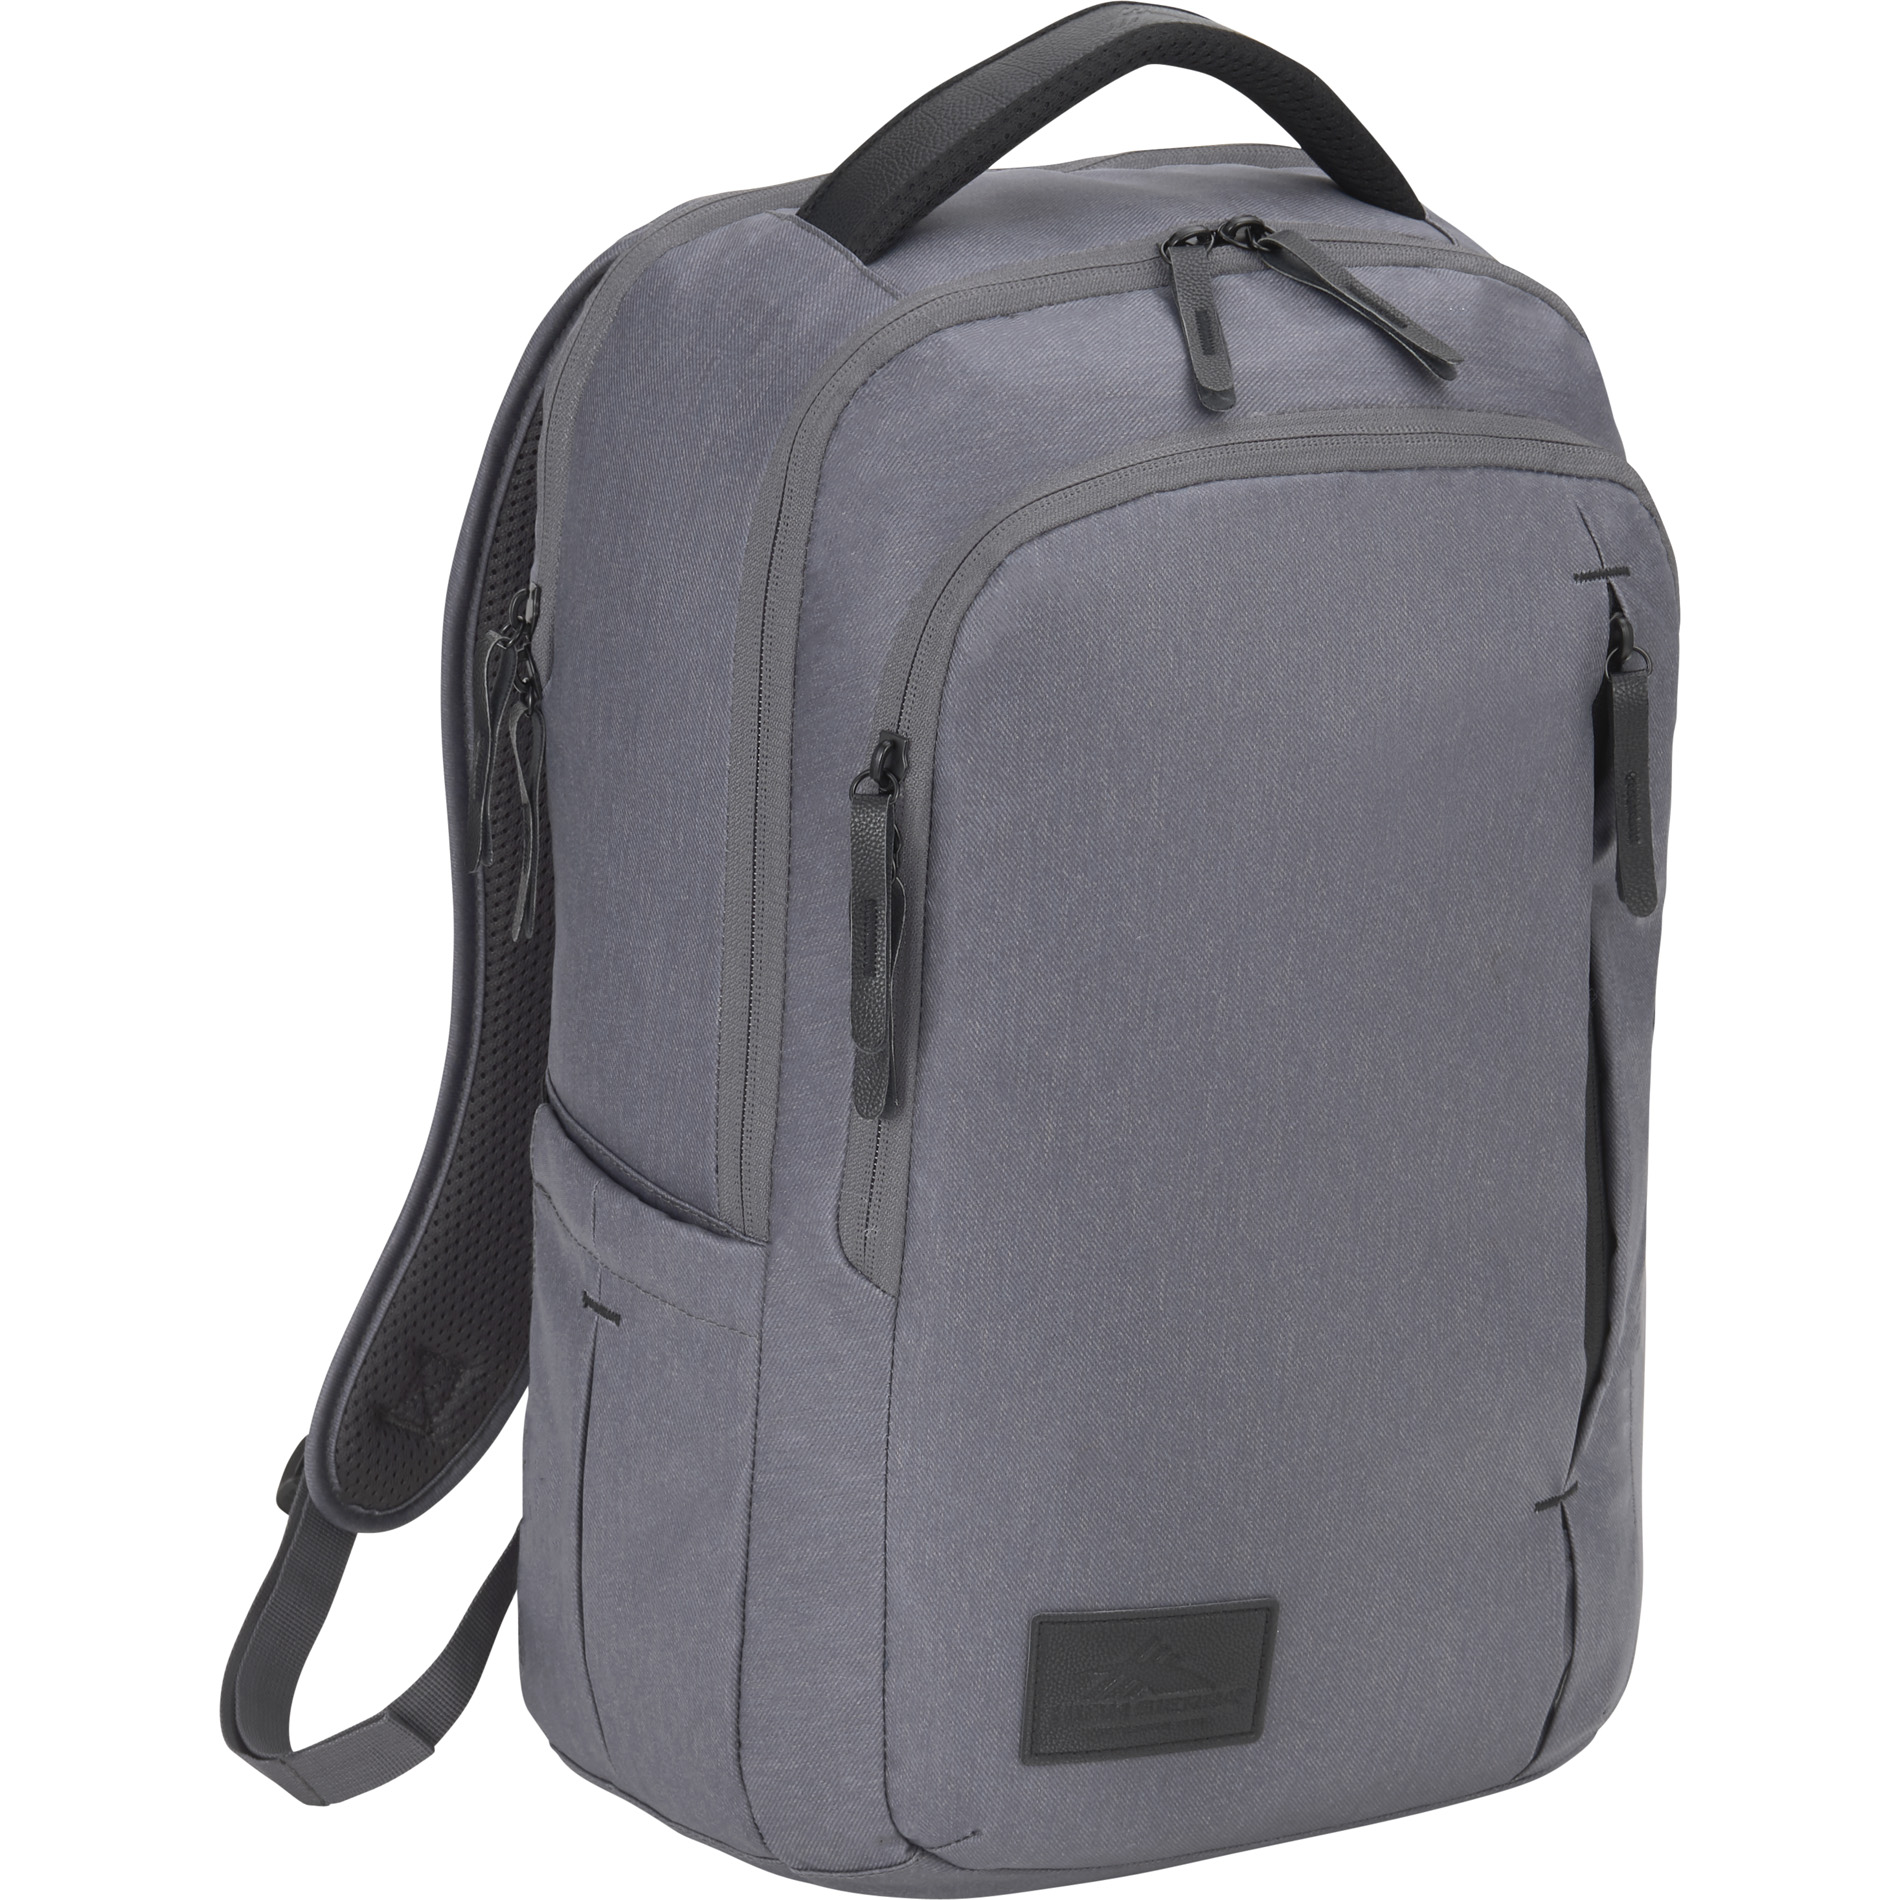 High Sierra 8051-99 - Slim 15" Computer Backpack